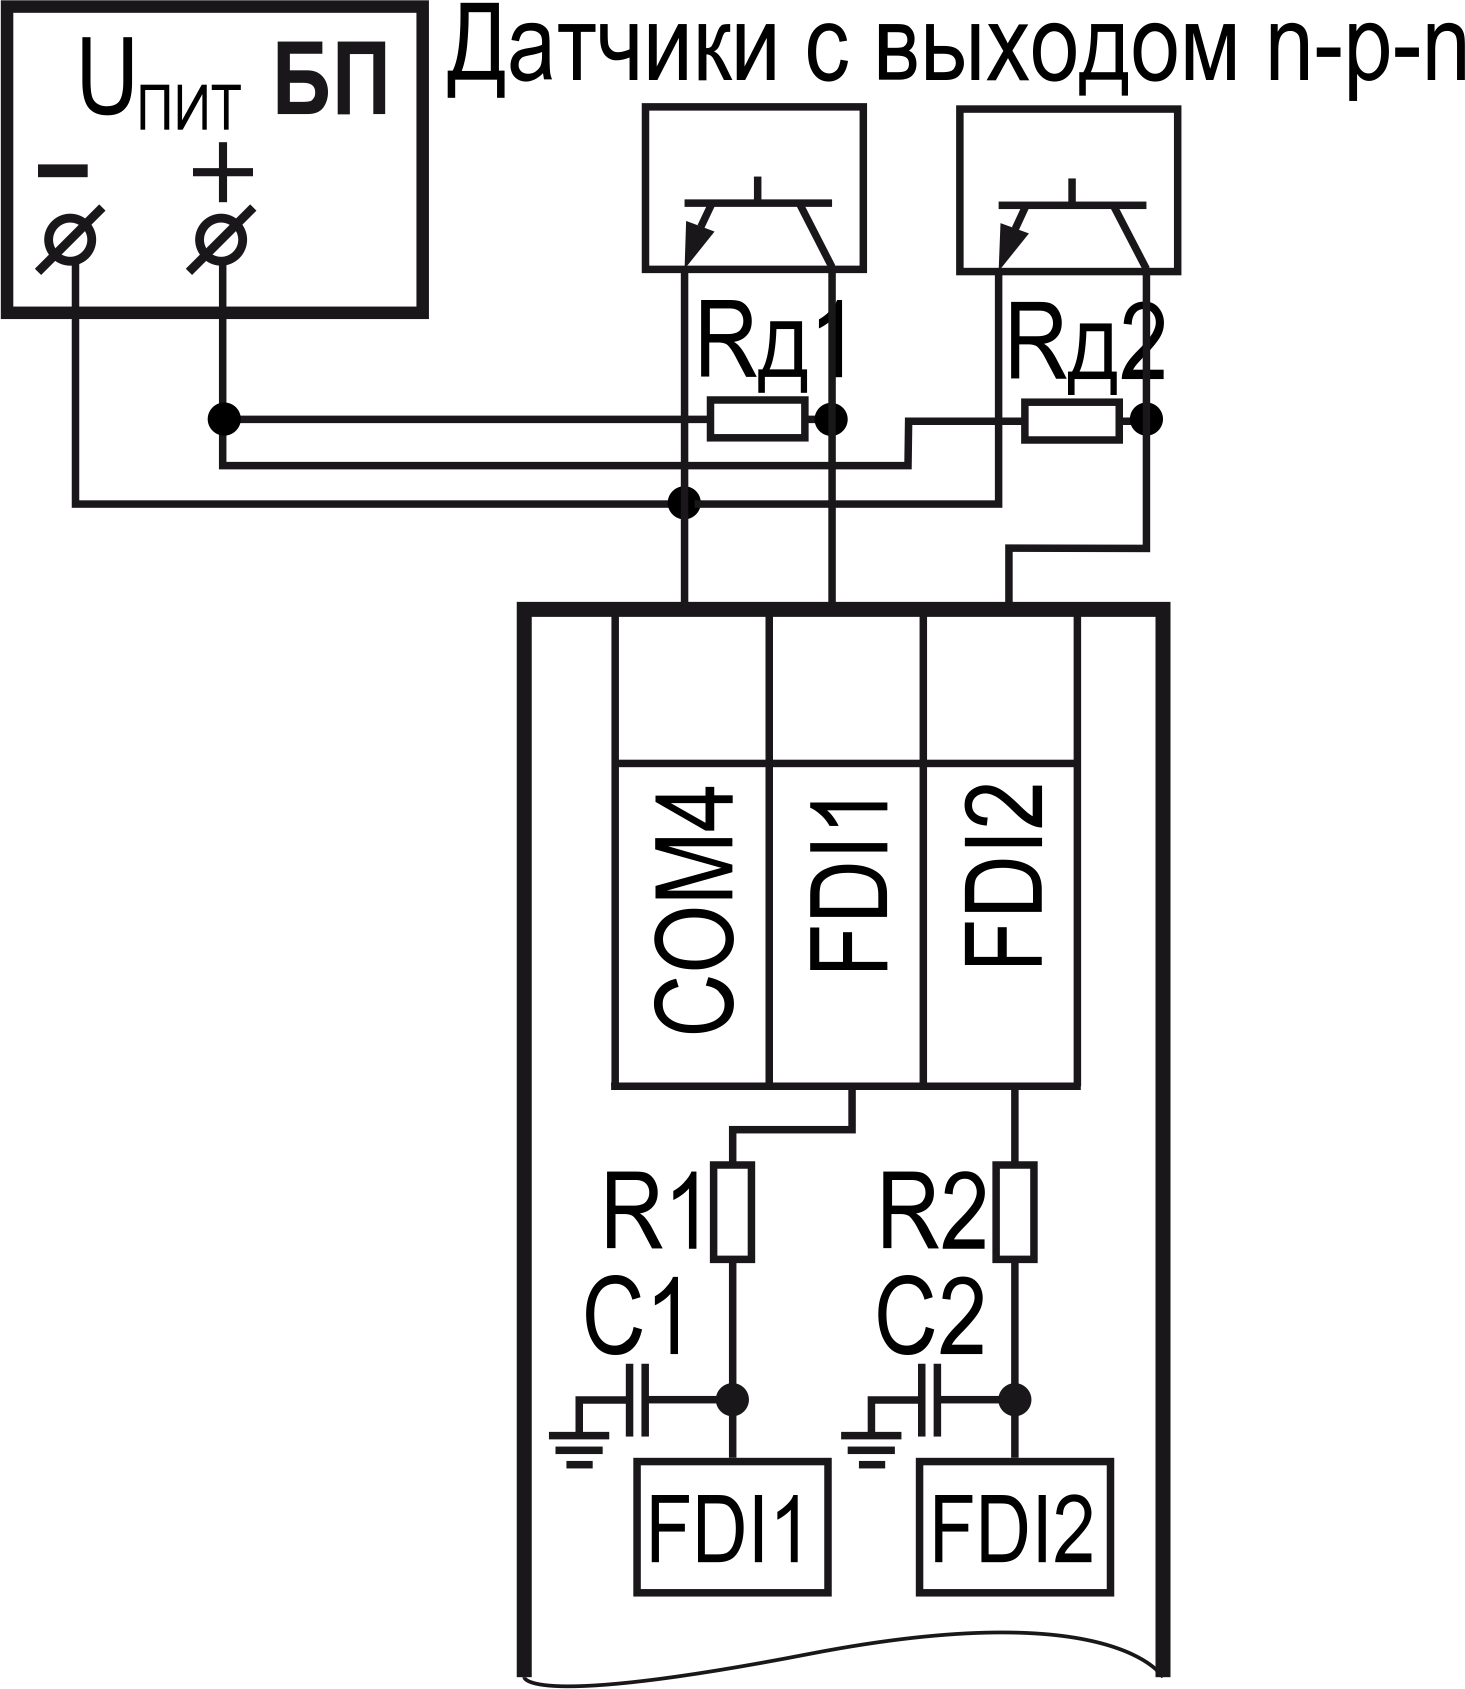 Подключение к входам типа «ДС» датчиков с выходом n-p-n